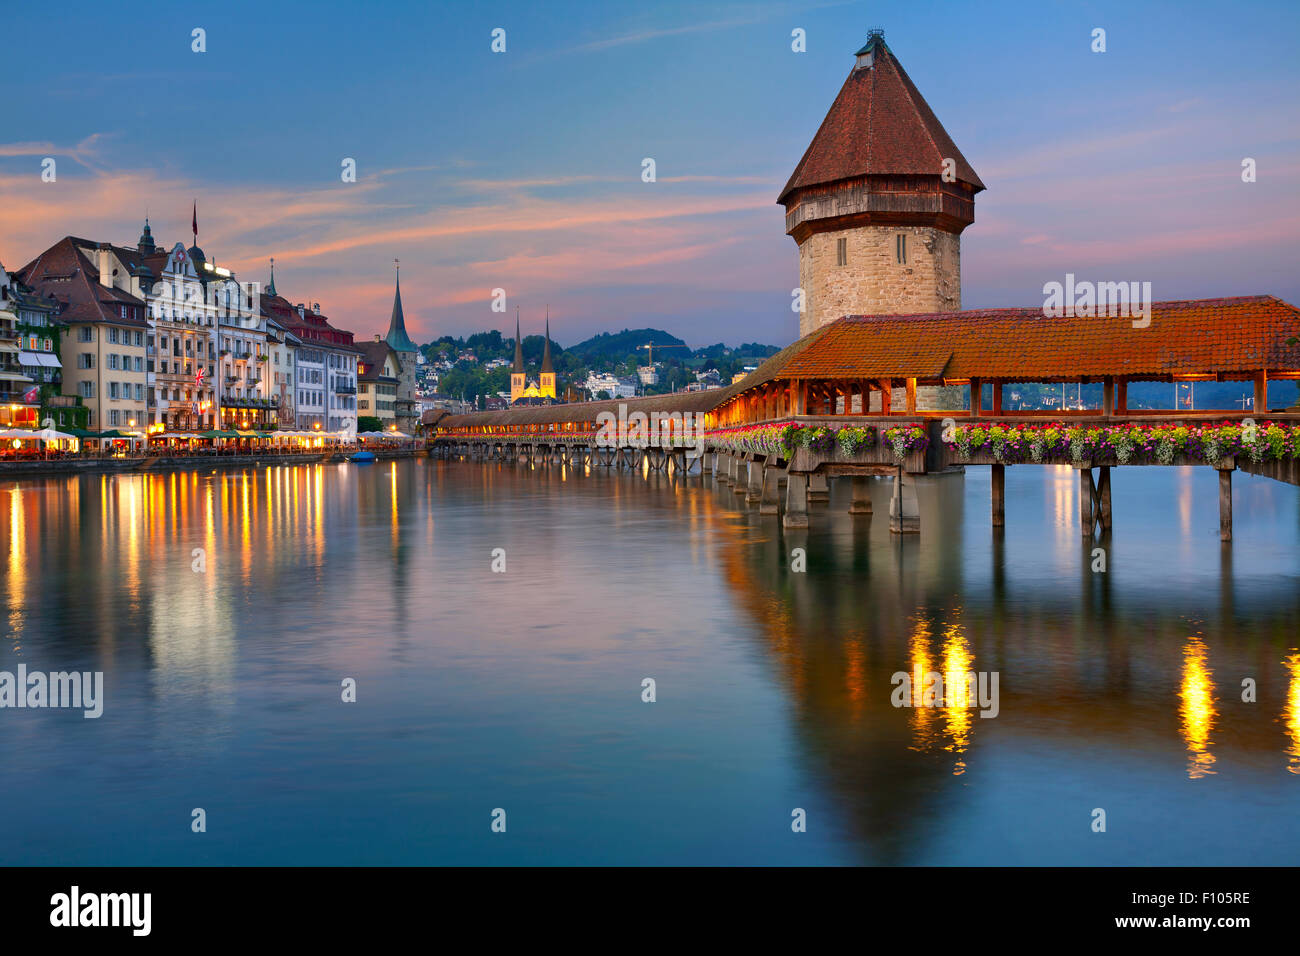 Image of Lucerne, Switzerland during twilight blue hour. Stock Photo